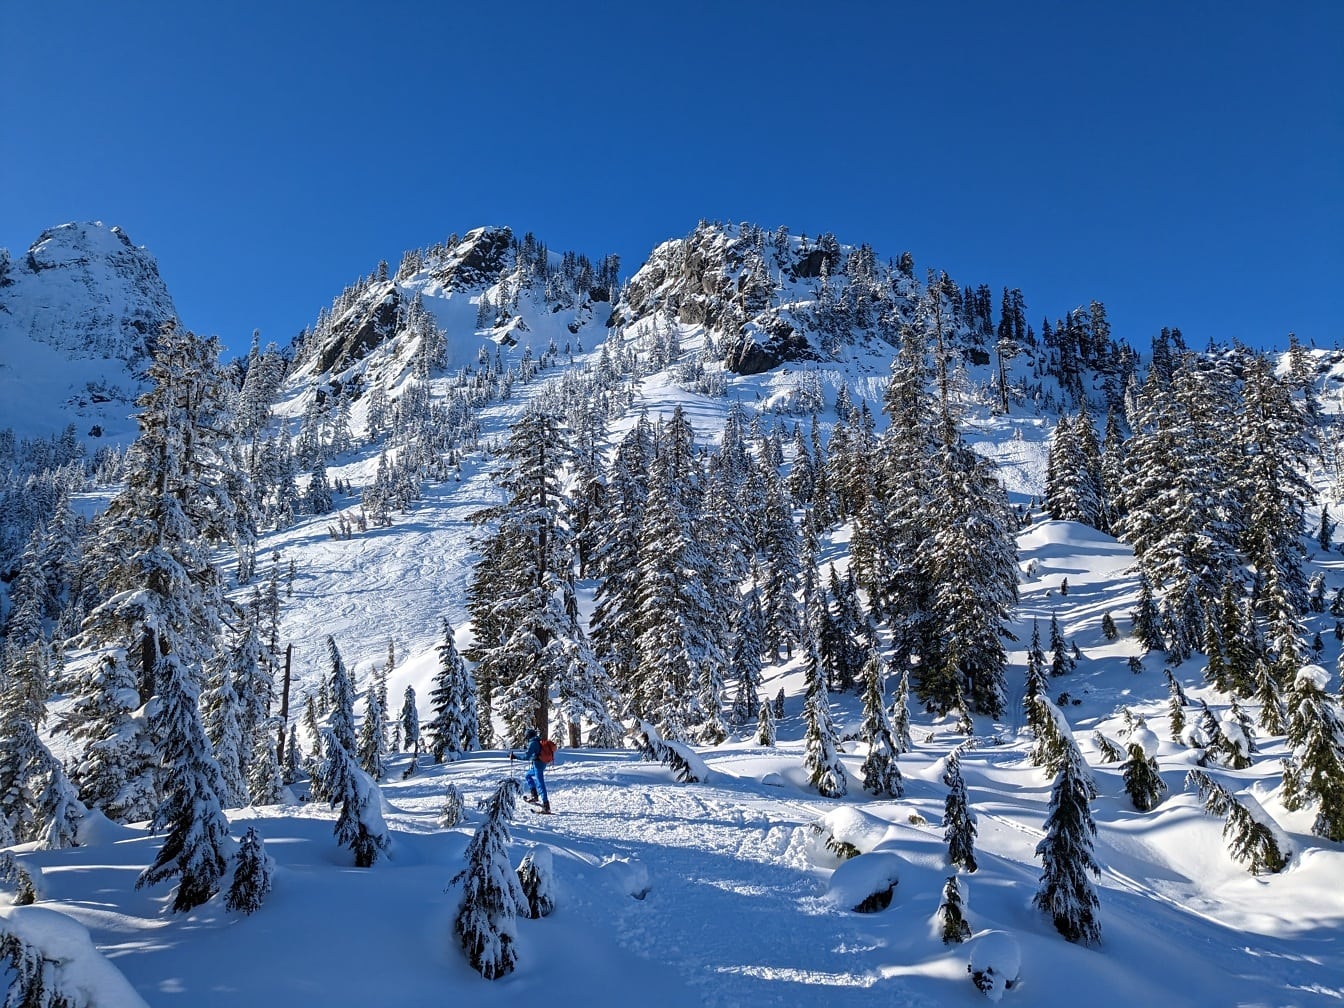 Pemain ski mendaki gunung bersalju di hari yang cerah